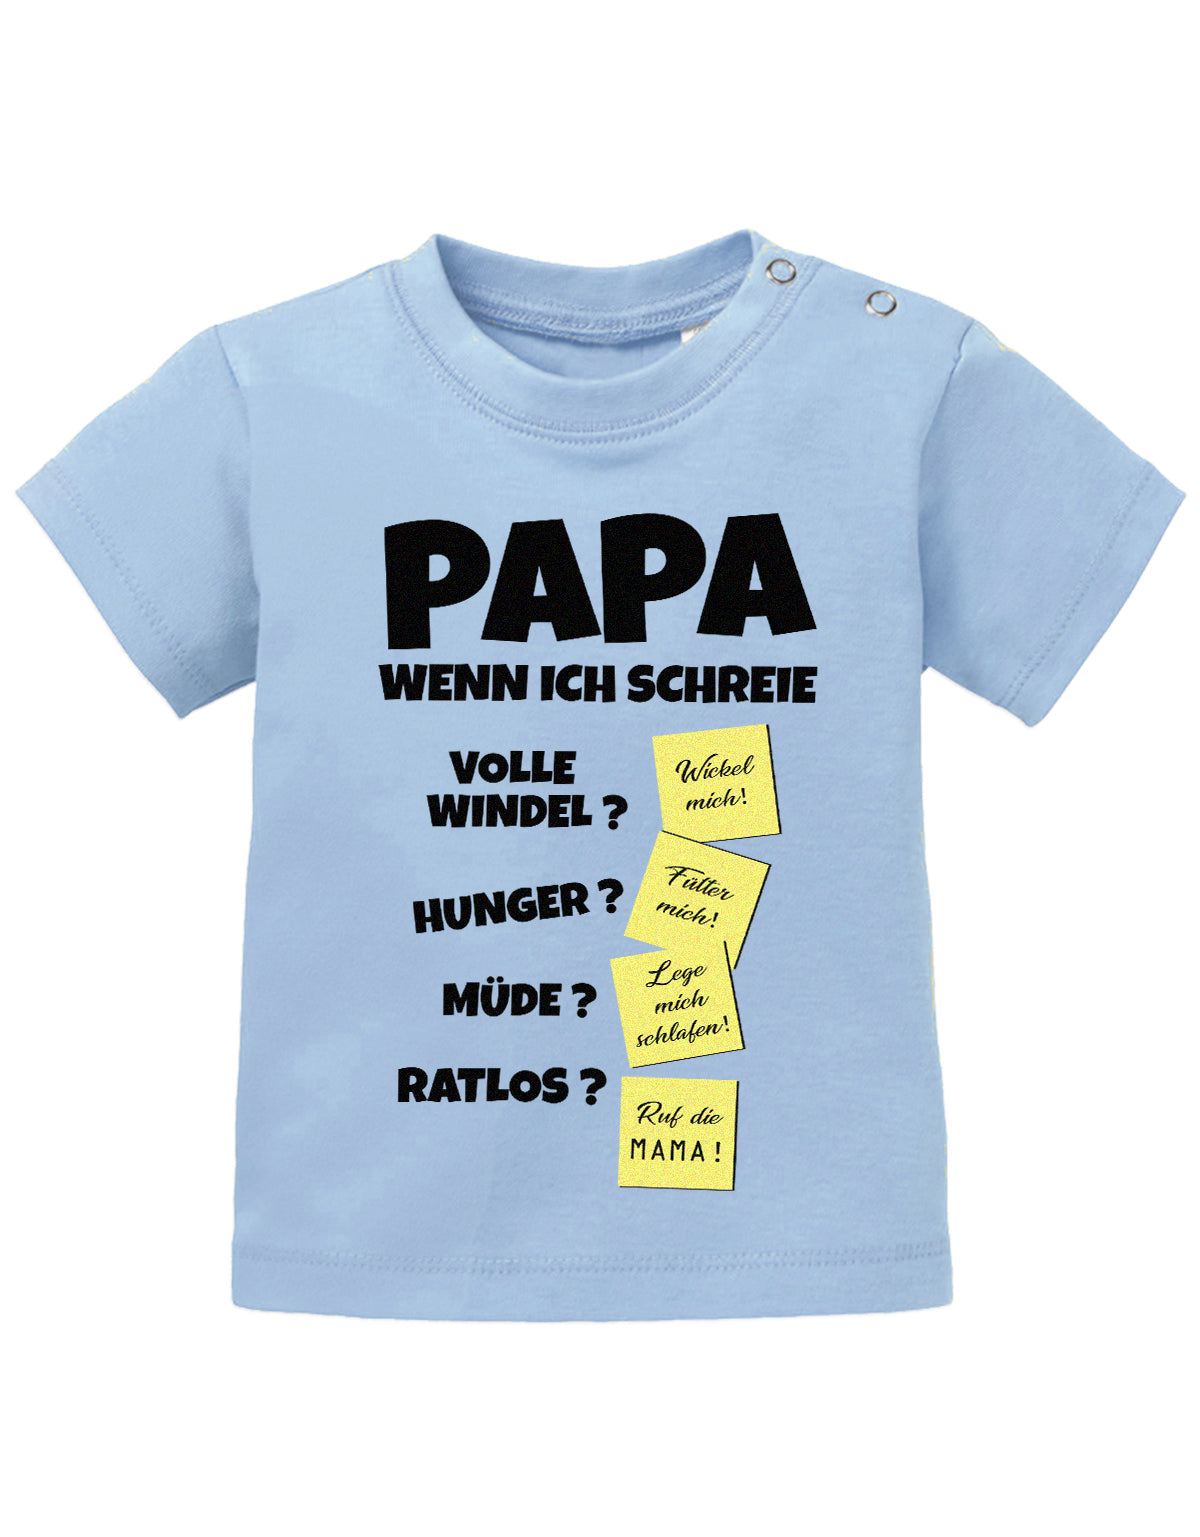 Lustiges süßes Sprüche Baby Shirt Papa wenn ich schreie - Notizen Lösungen. Hellblau